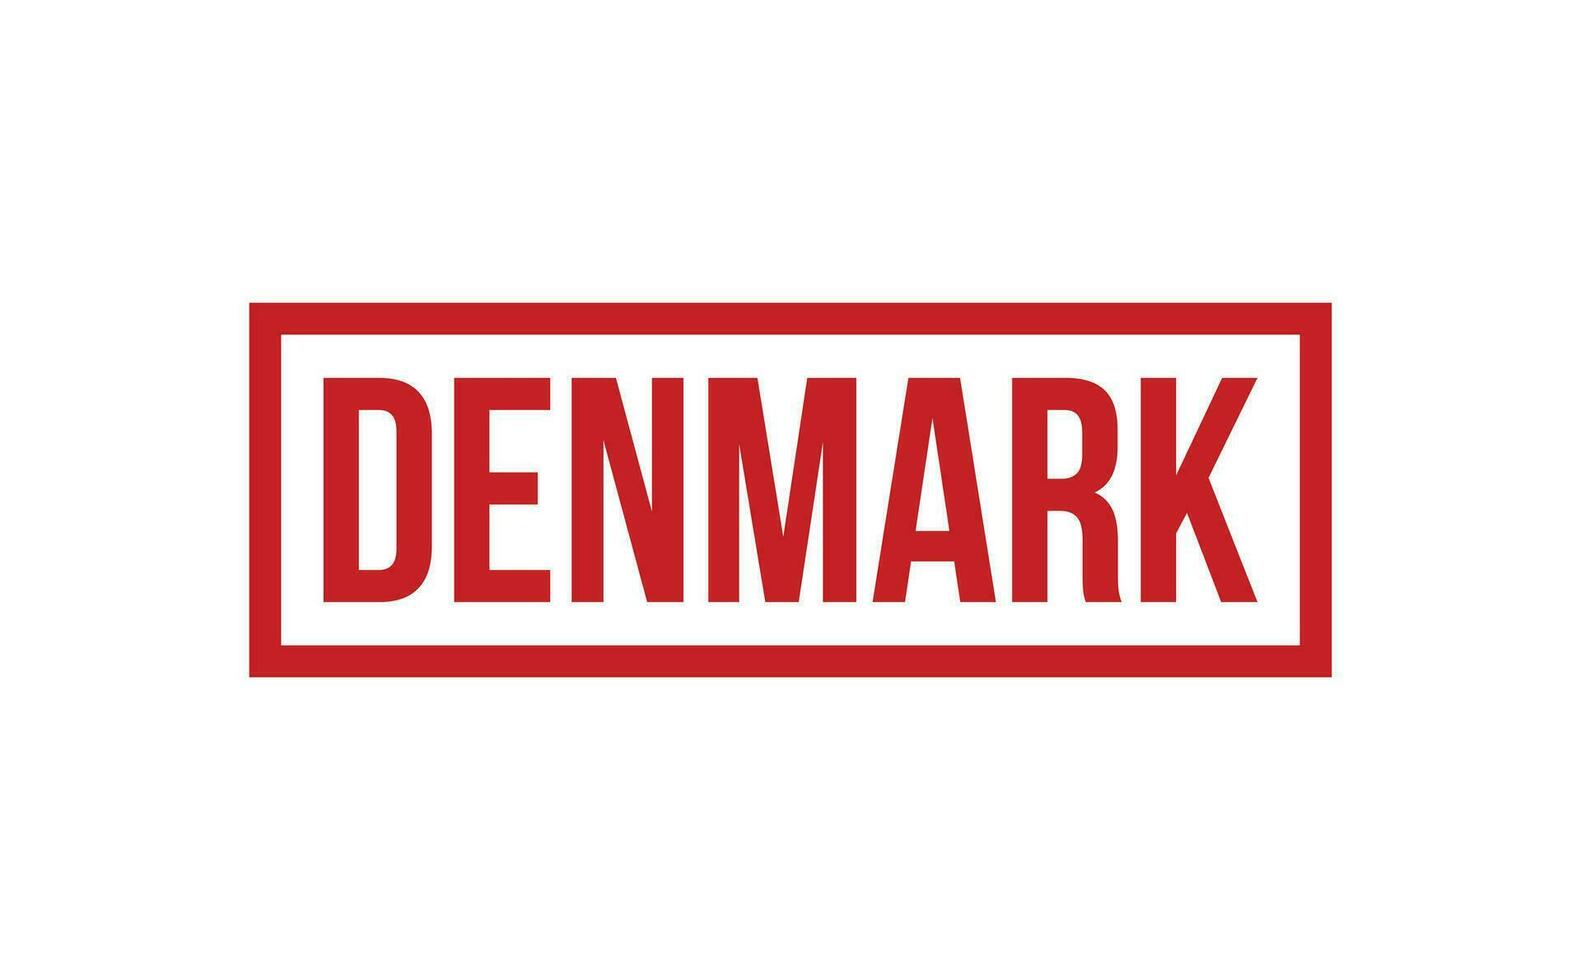 Dinamarca caucho sello sello vector